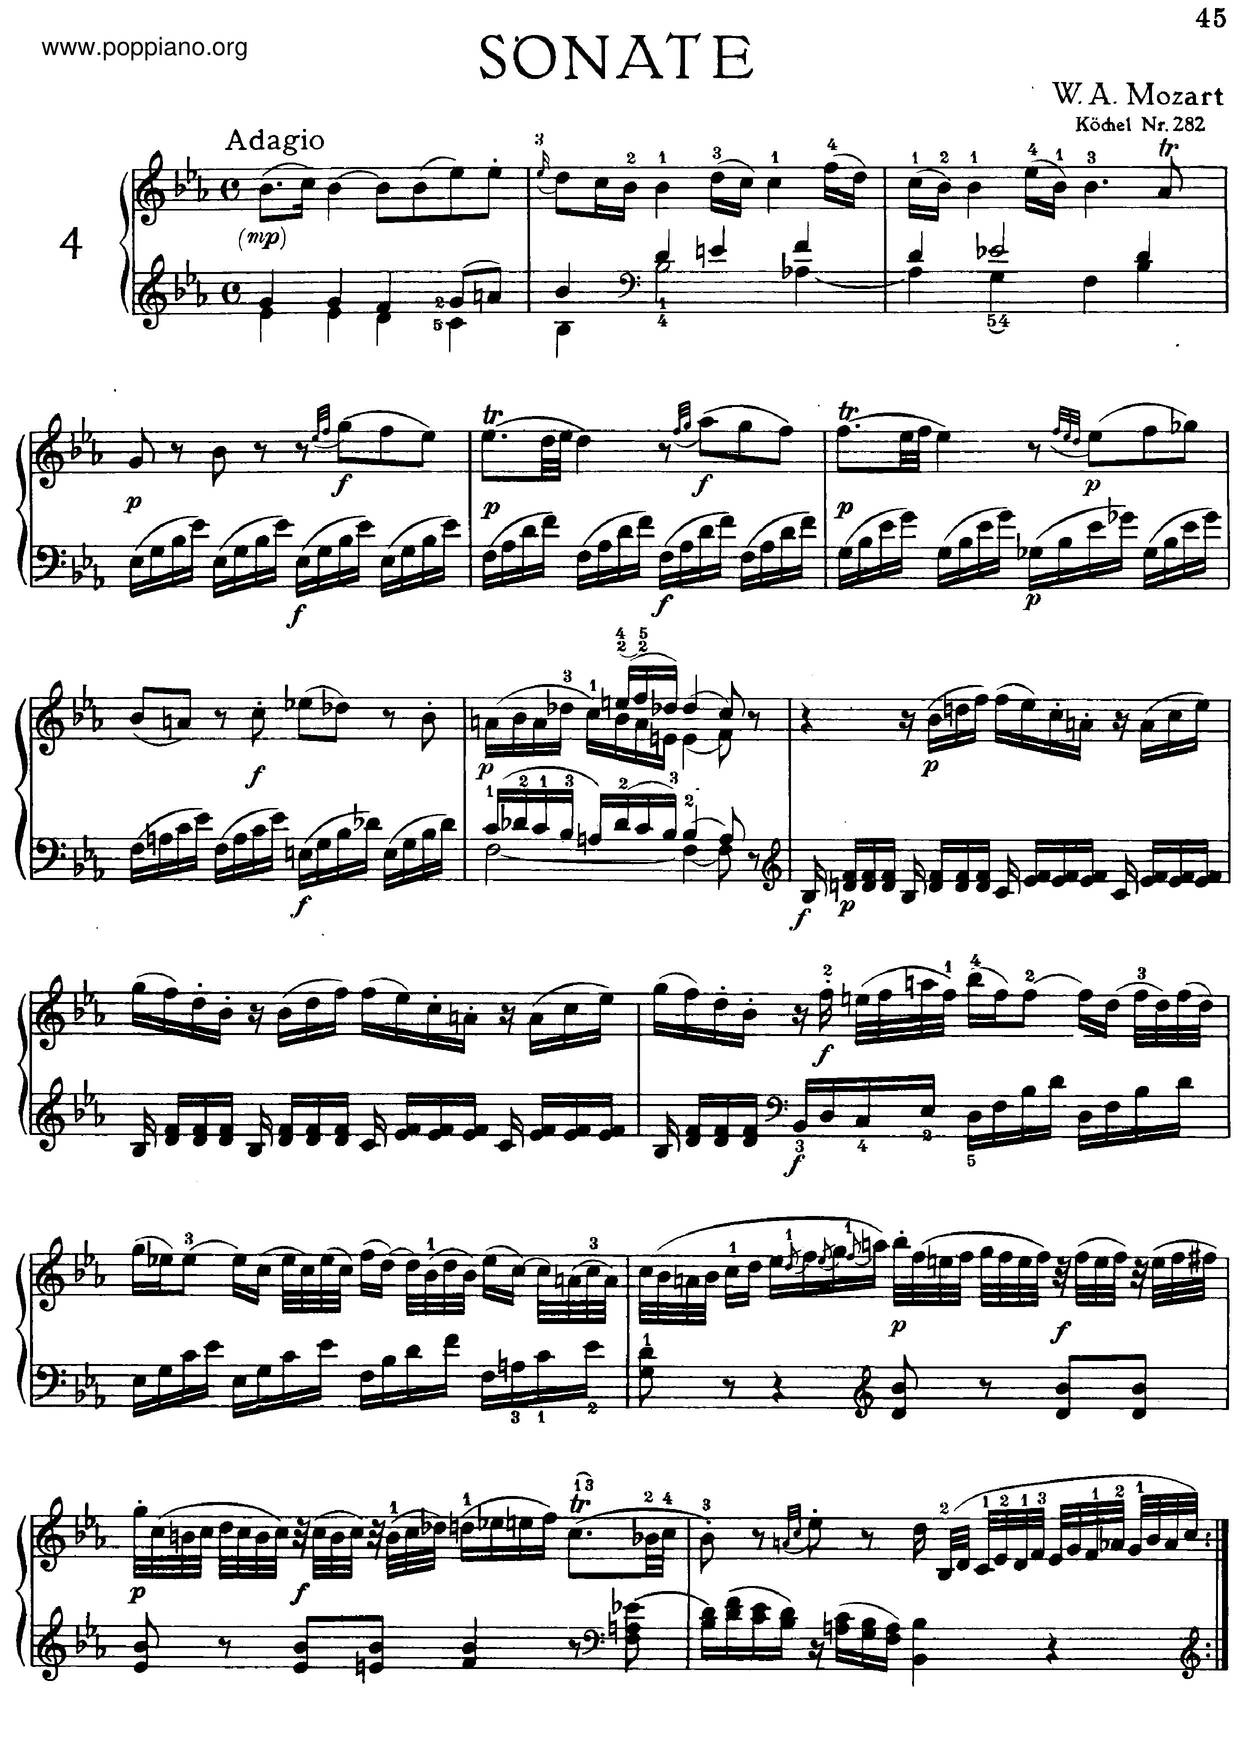 Piano Sonata No. 4 In E-Flat Major, K. 282 Score